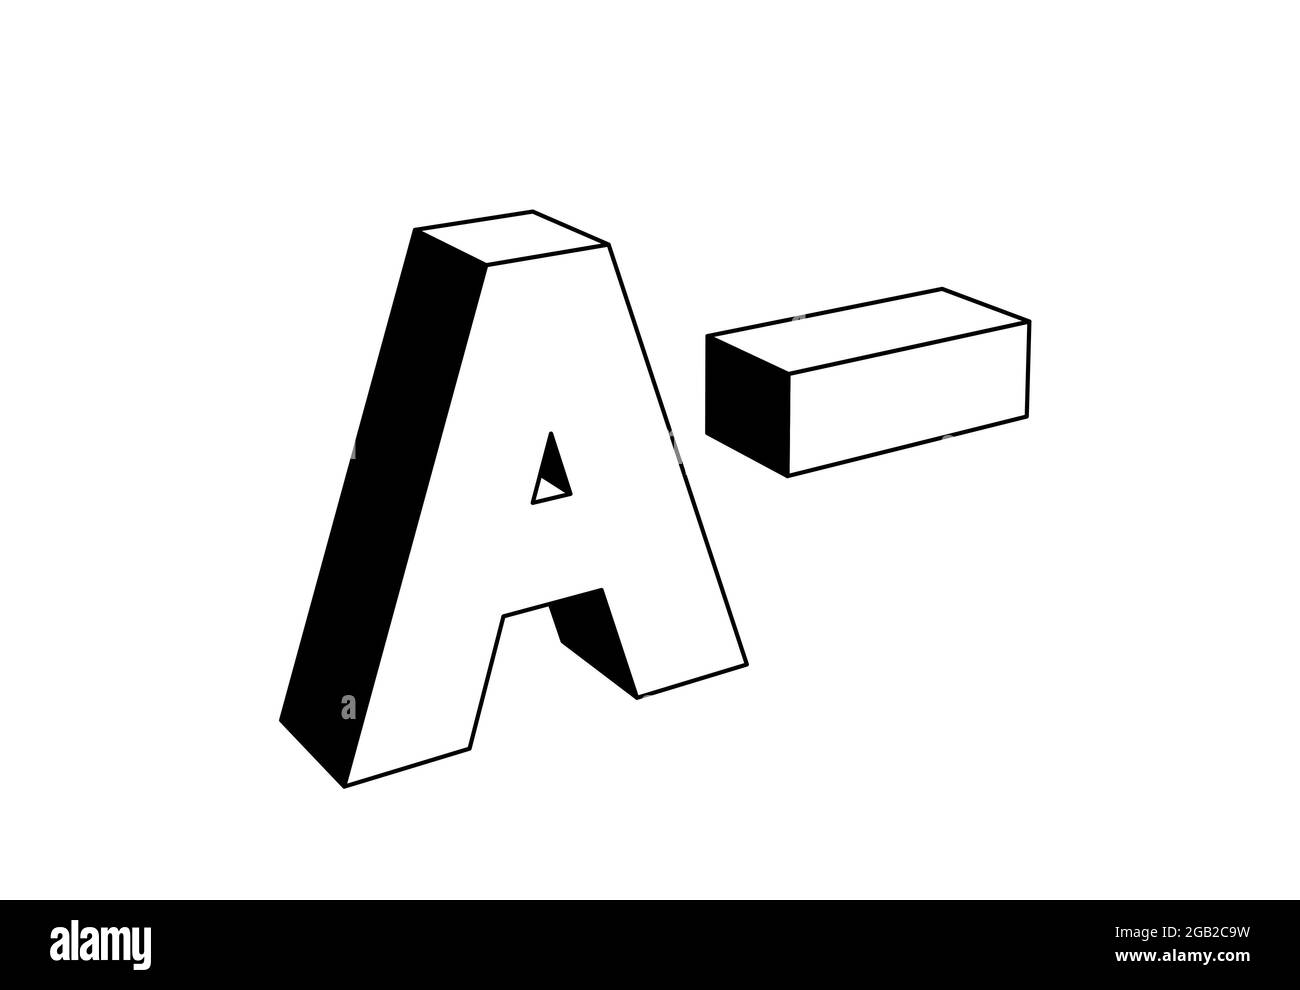 una lettera minuscola maiuscola, sistema di classificazione scolastico basato su lettere alfabetiche, illustrazione 3d in bianco e nero, stile icona Foto Stock